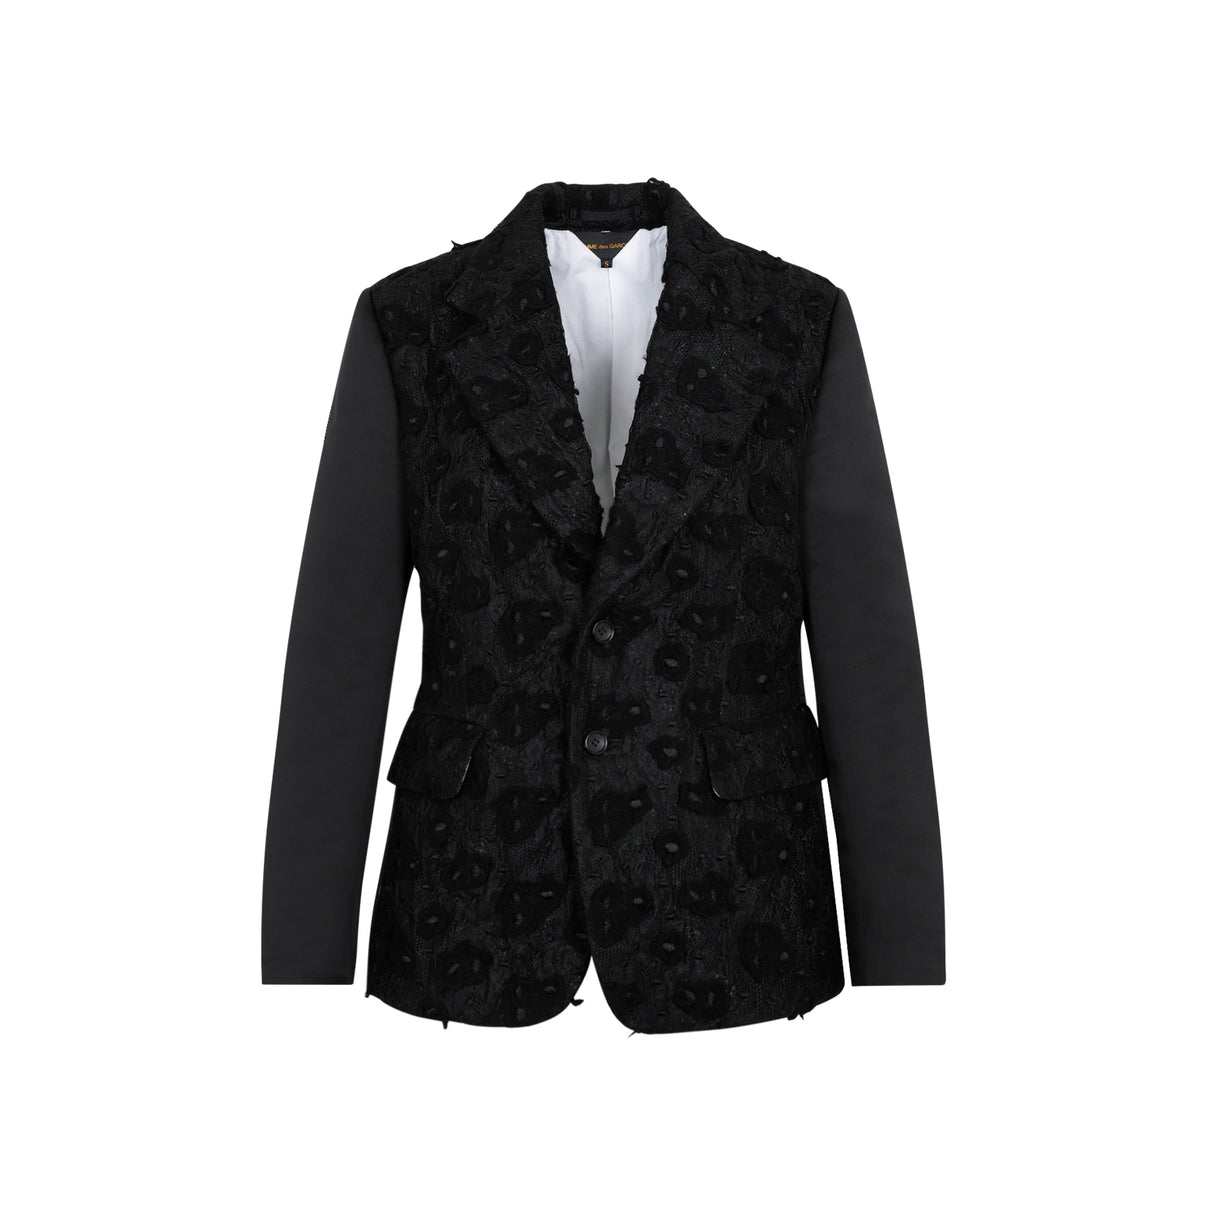 Áo khoác len đen dành cho phụ nữ - Bộ sưu tập SS23